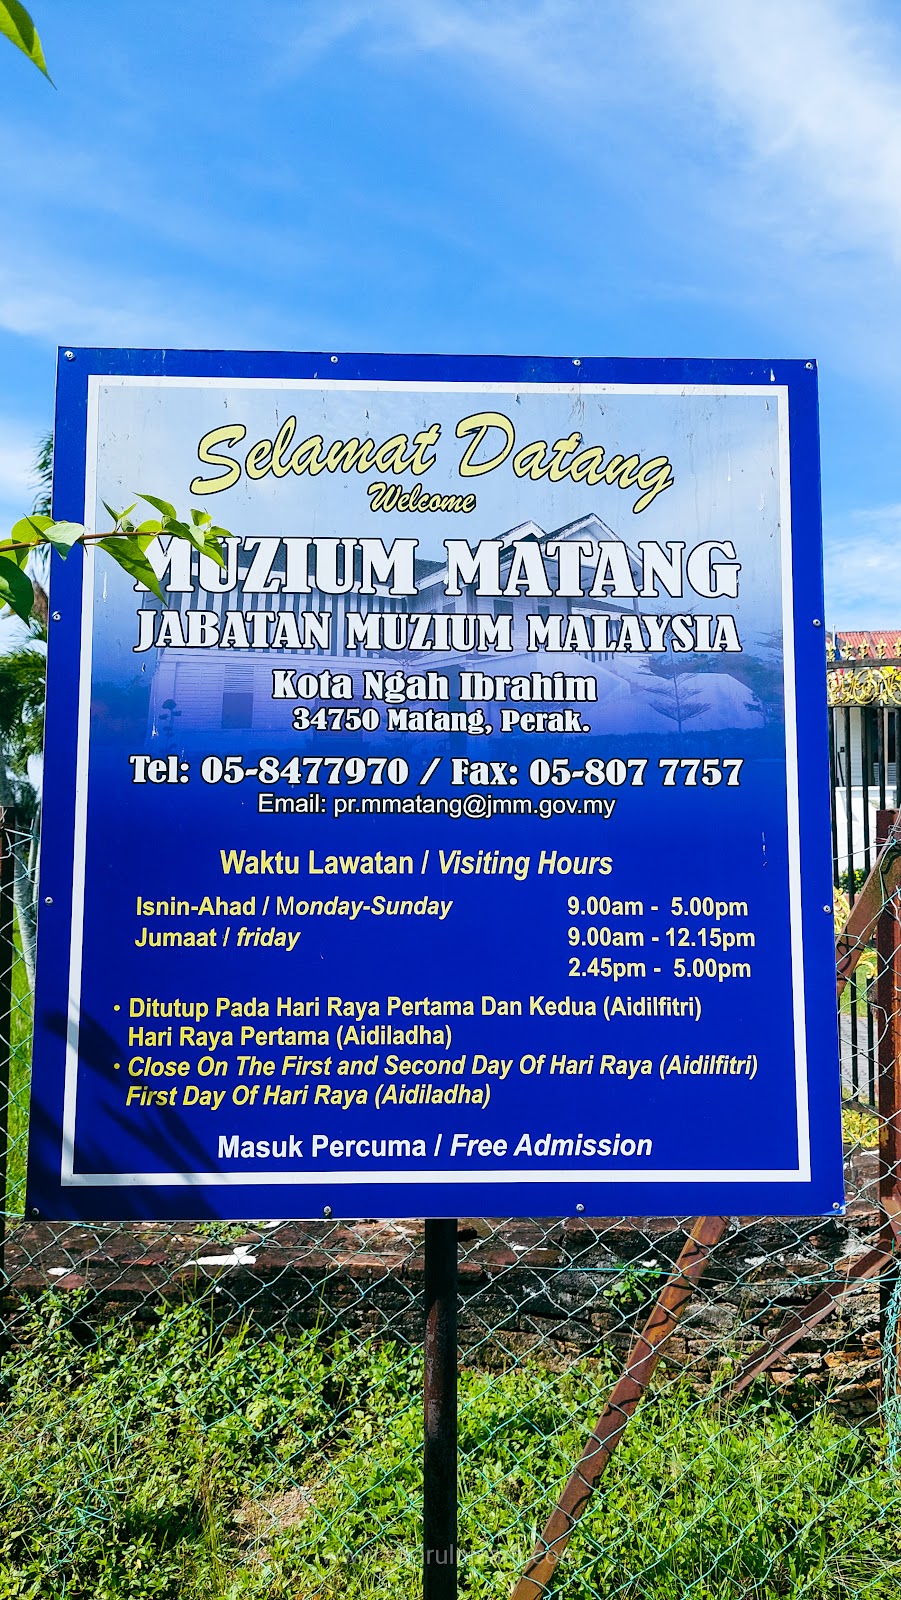 Melihat Rumah Orang Kaya Perak Di Kota Ngah Ibrahim / Muzium Matang